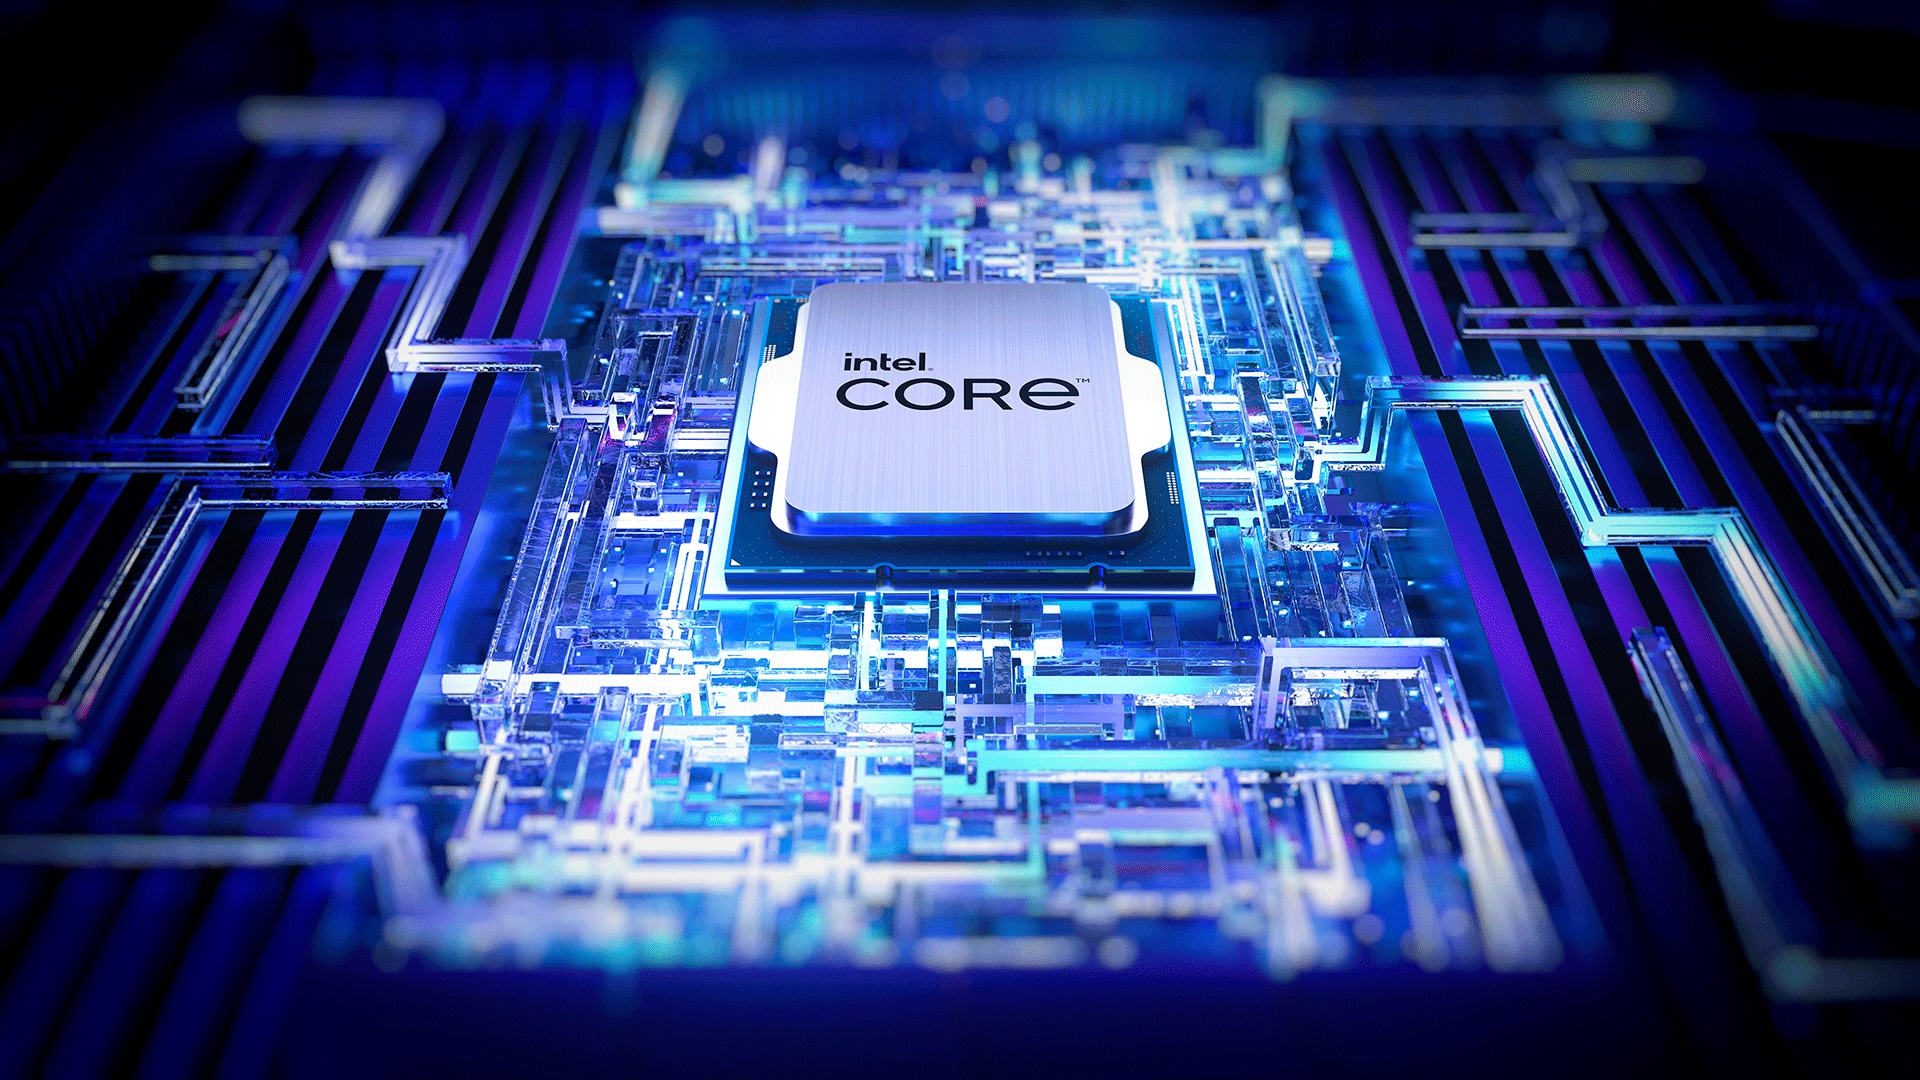 อินเทล เปิดตัวตระกูลโปรเซสเซอร์ Intel Core เจเนอเรชัน 13  พร้อมโซลูชัน Intel Unison ใหม่